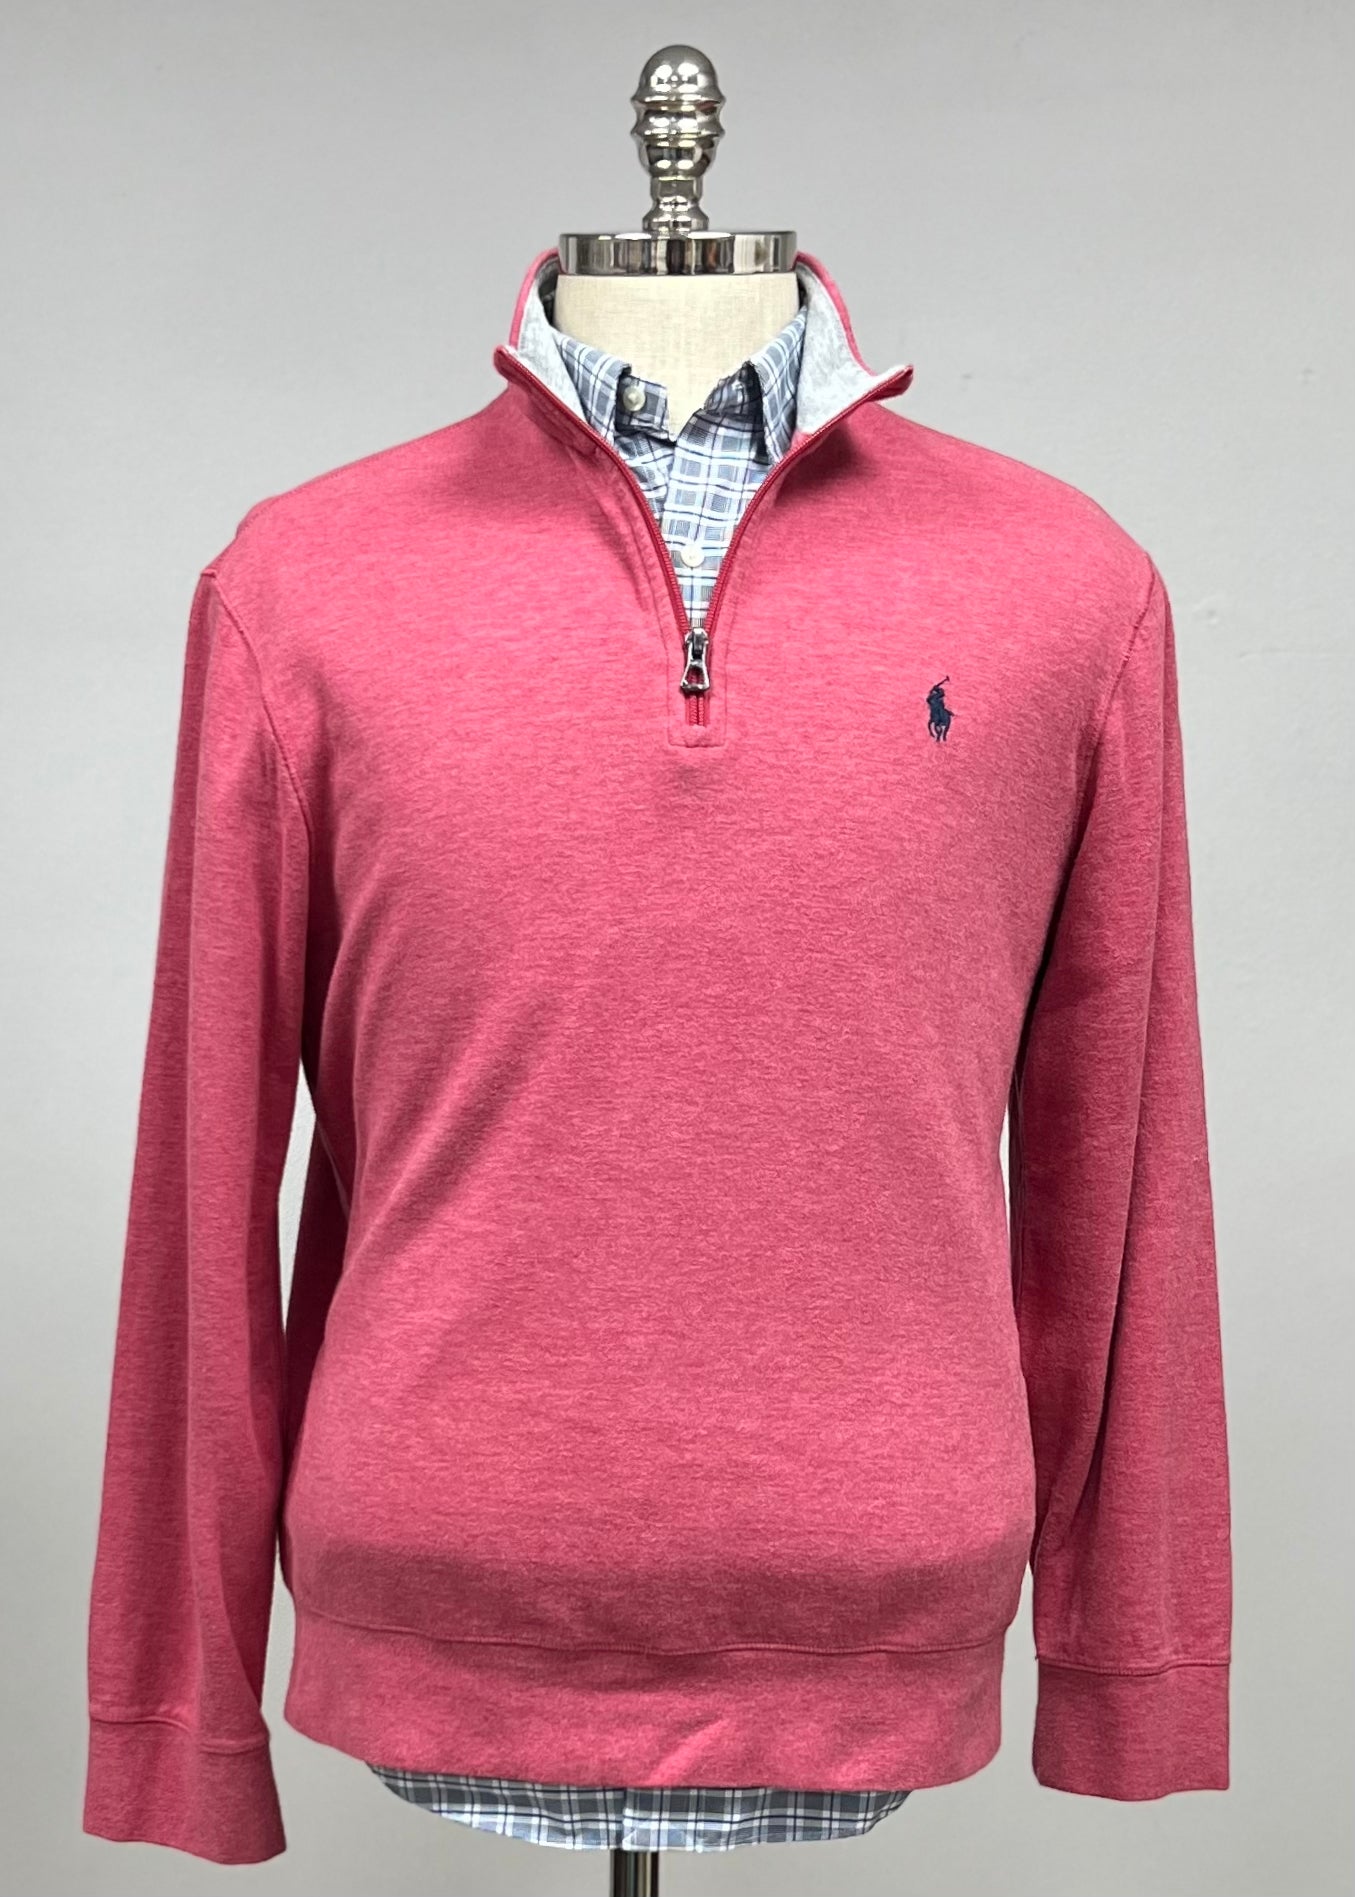 Sueter Jersey Polo Ralph Lauren 🏇🏼 color rosado magenta con logo azul navy Talla M